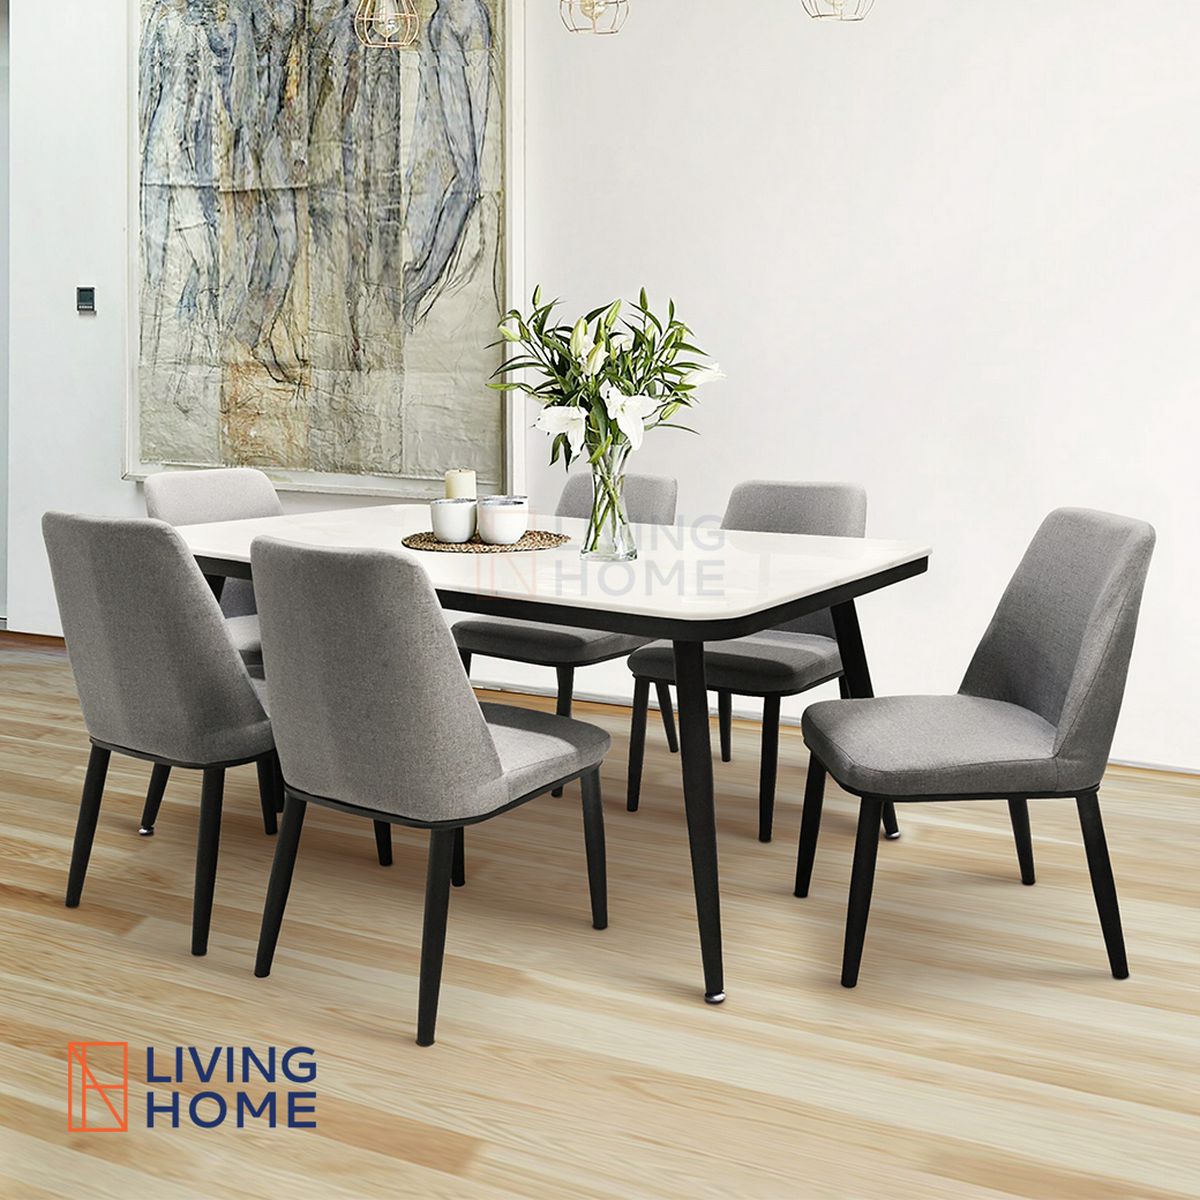 Livinghome Furniture ชุดโต๊ะอาหาร เก้าอี้ เลือกขนาดได้ ขนาด เลือกสีได้  สี รุ่น GRAB เทา ที่นั่ง